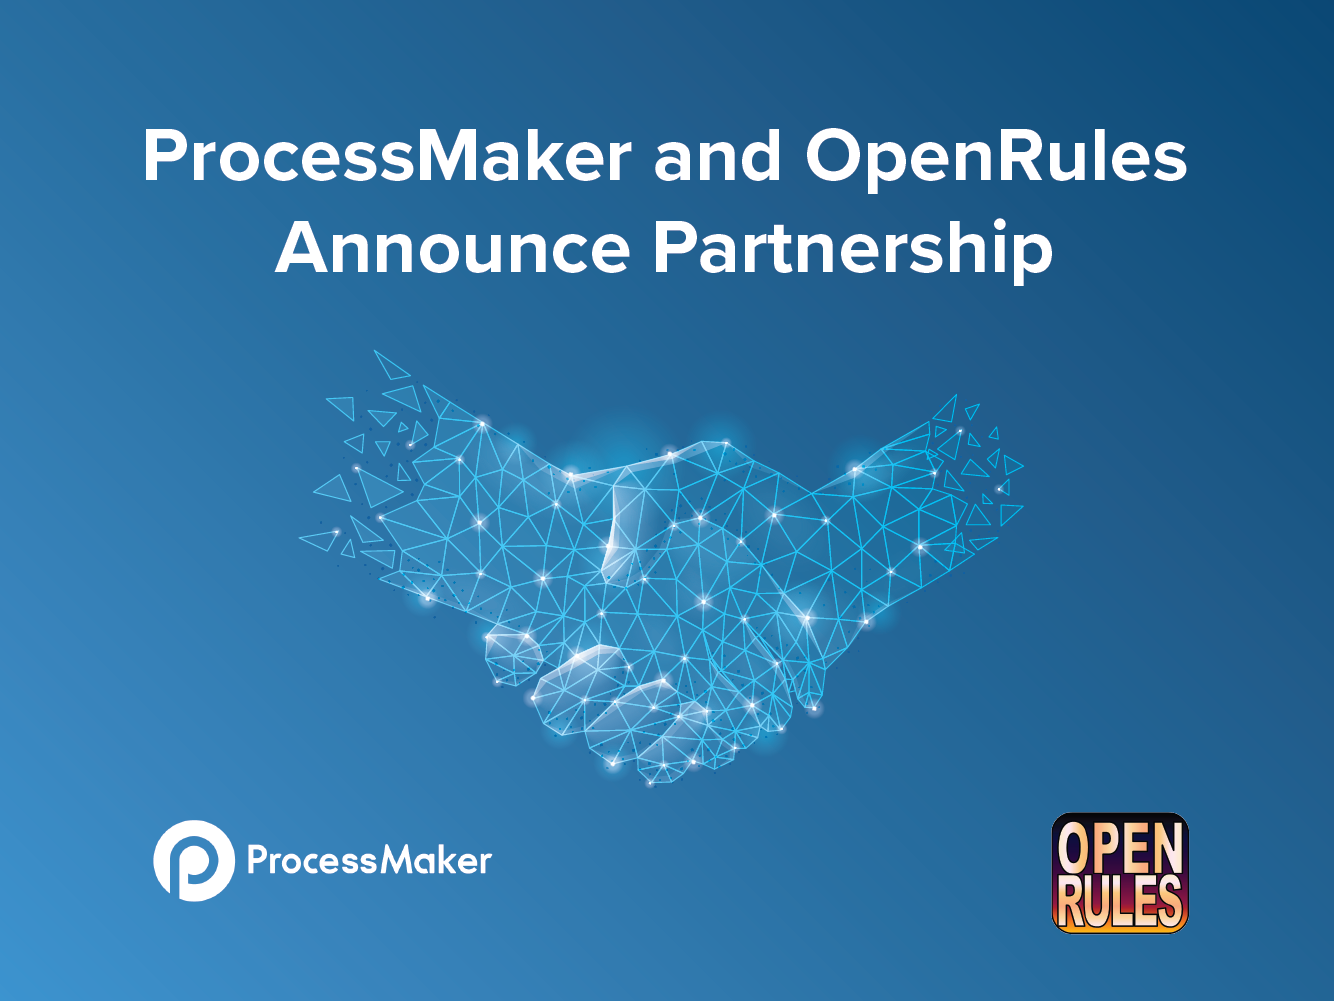 ProcessMaker anuncia una nueva asociación con OpenRules para la gestión de decisiones y reglas de negocio